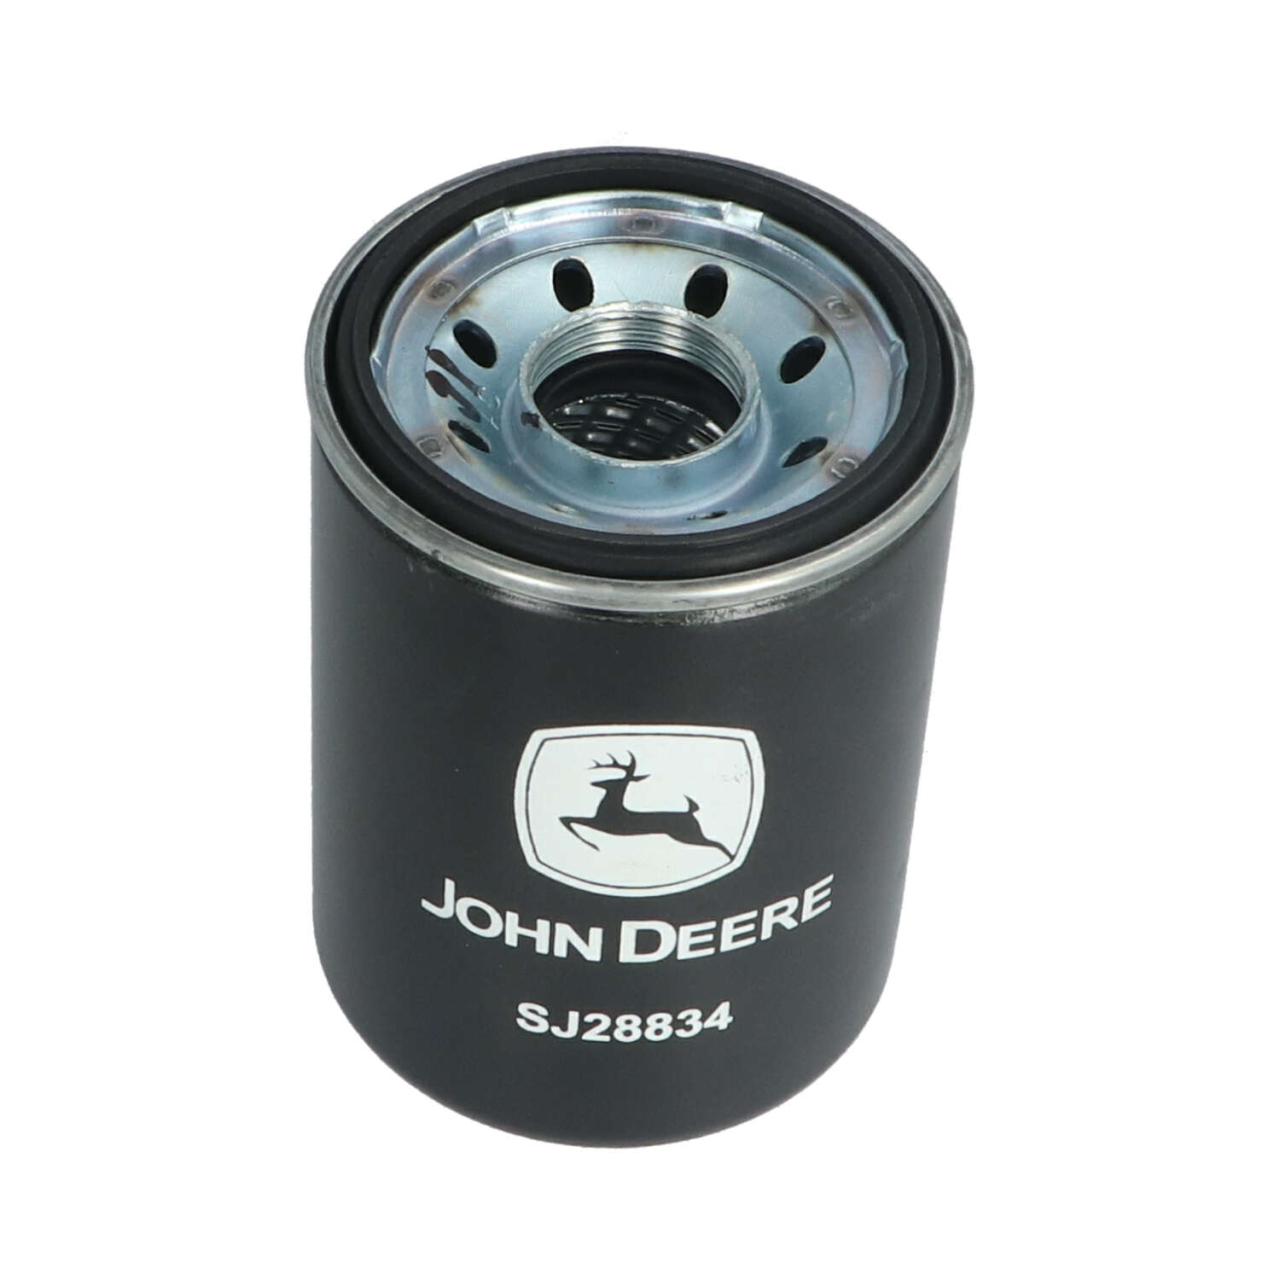 oil filter SJ28834 fitting for John Deere | RDM Parts